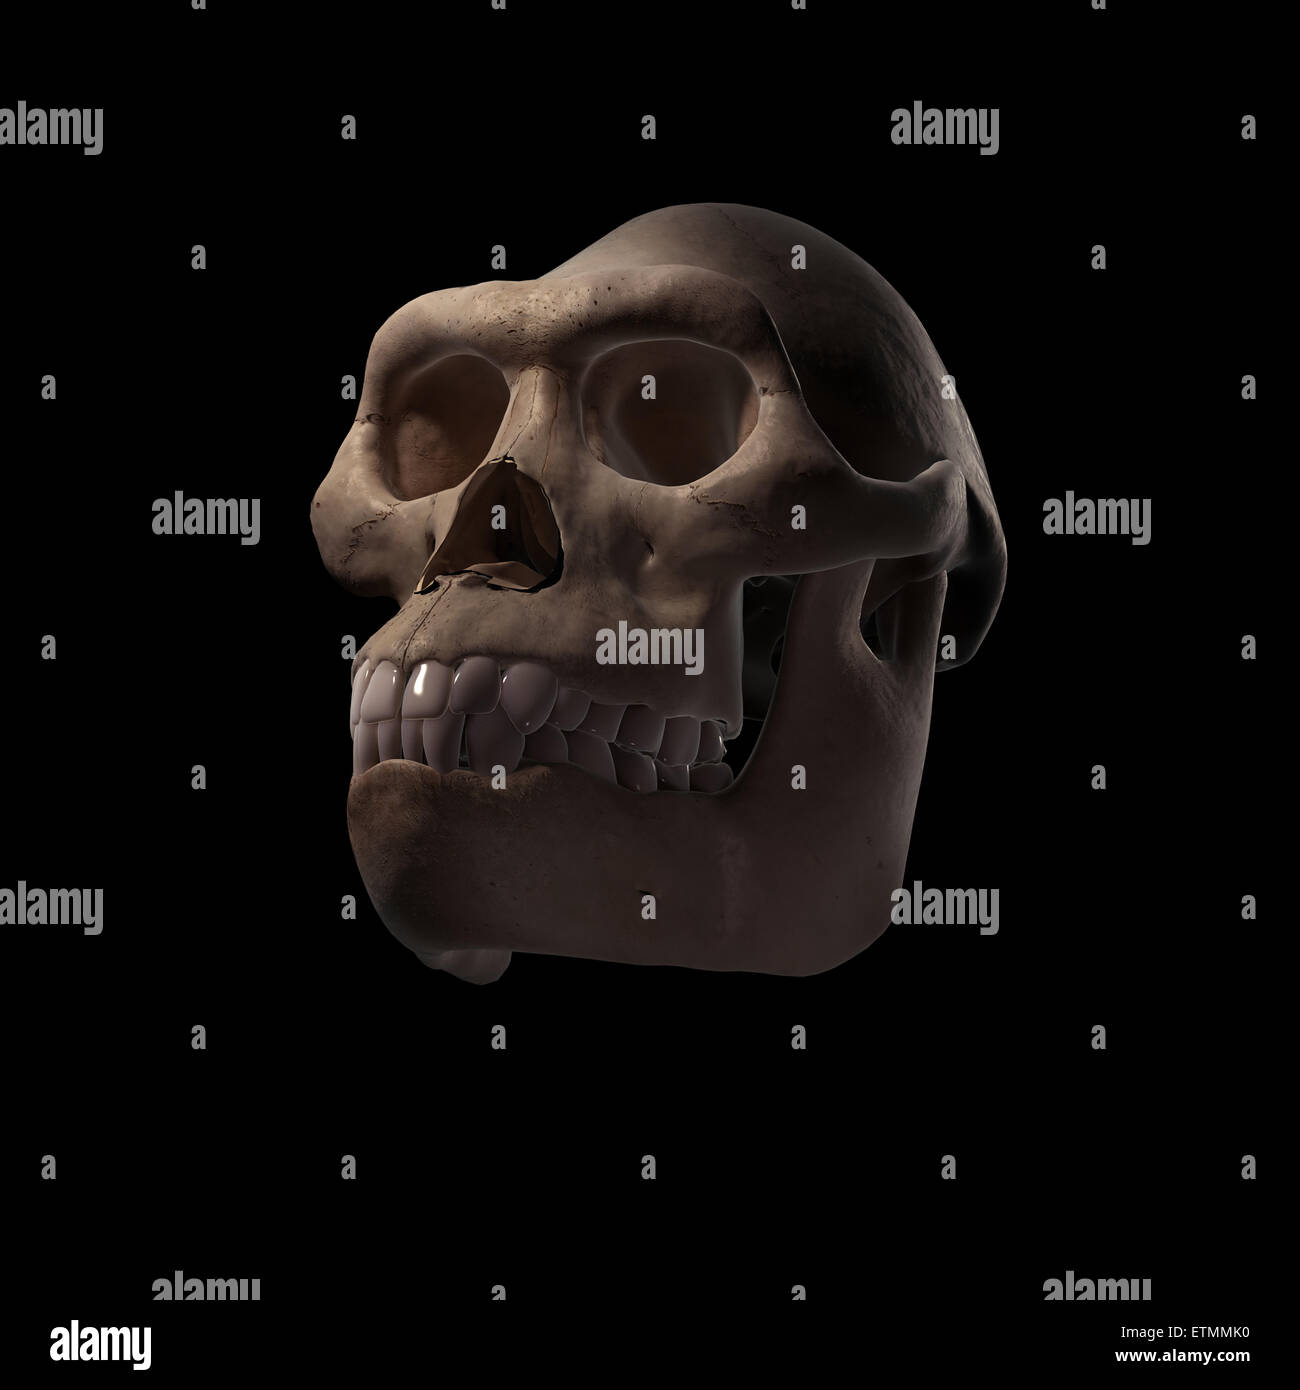 Illustrazione di un cranio Australopithecus. Australopithecus è un genere estinto di ominidi e inizio antenato di Homo Sapiens. Foto Stock